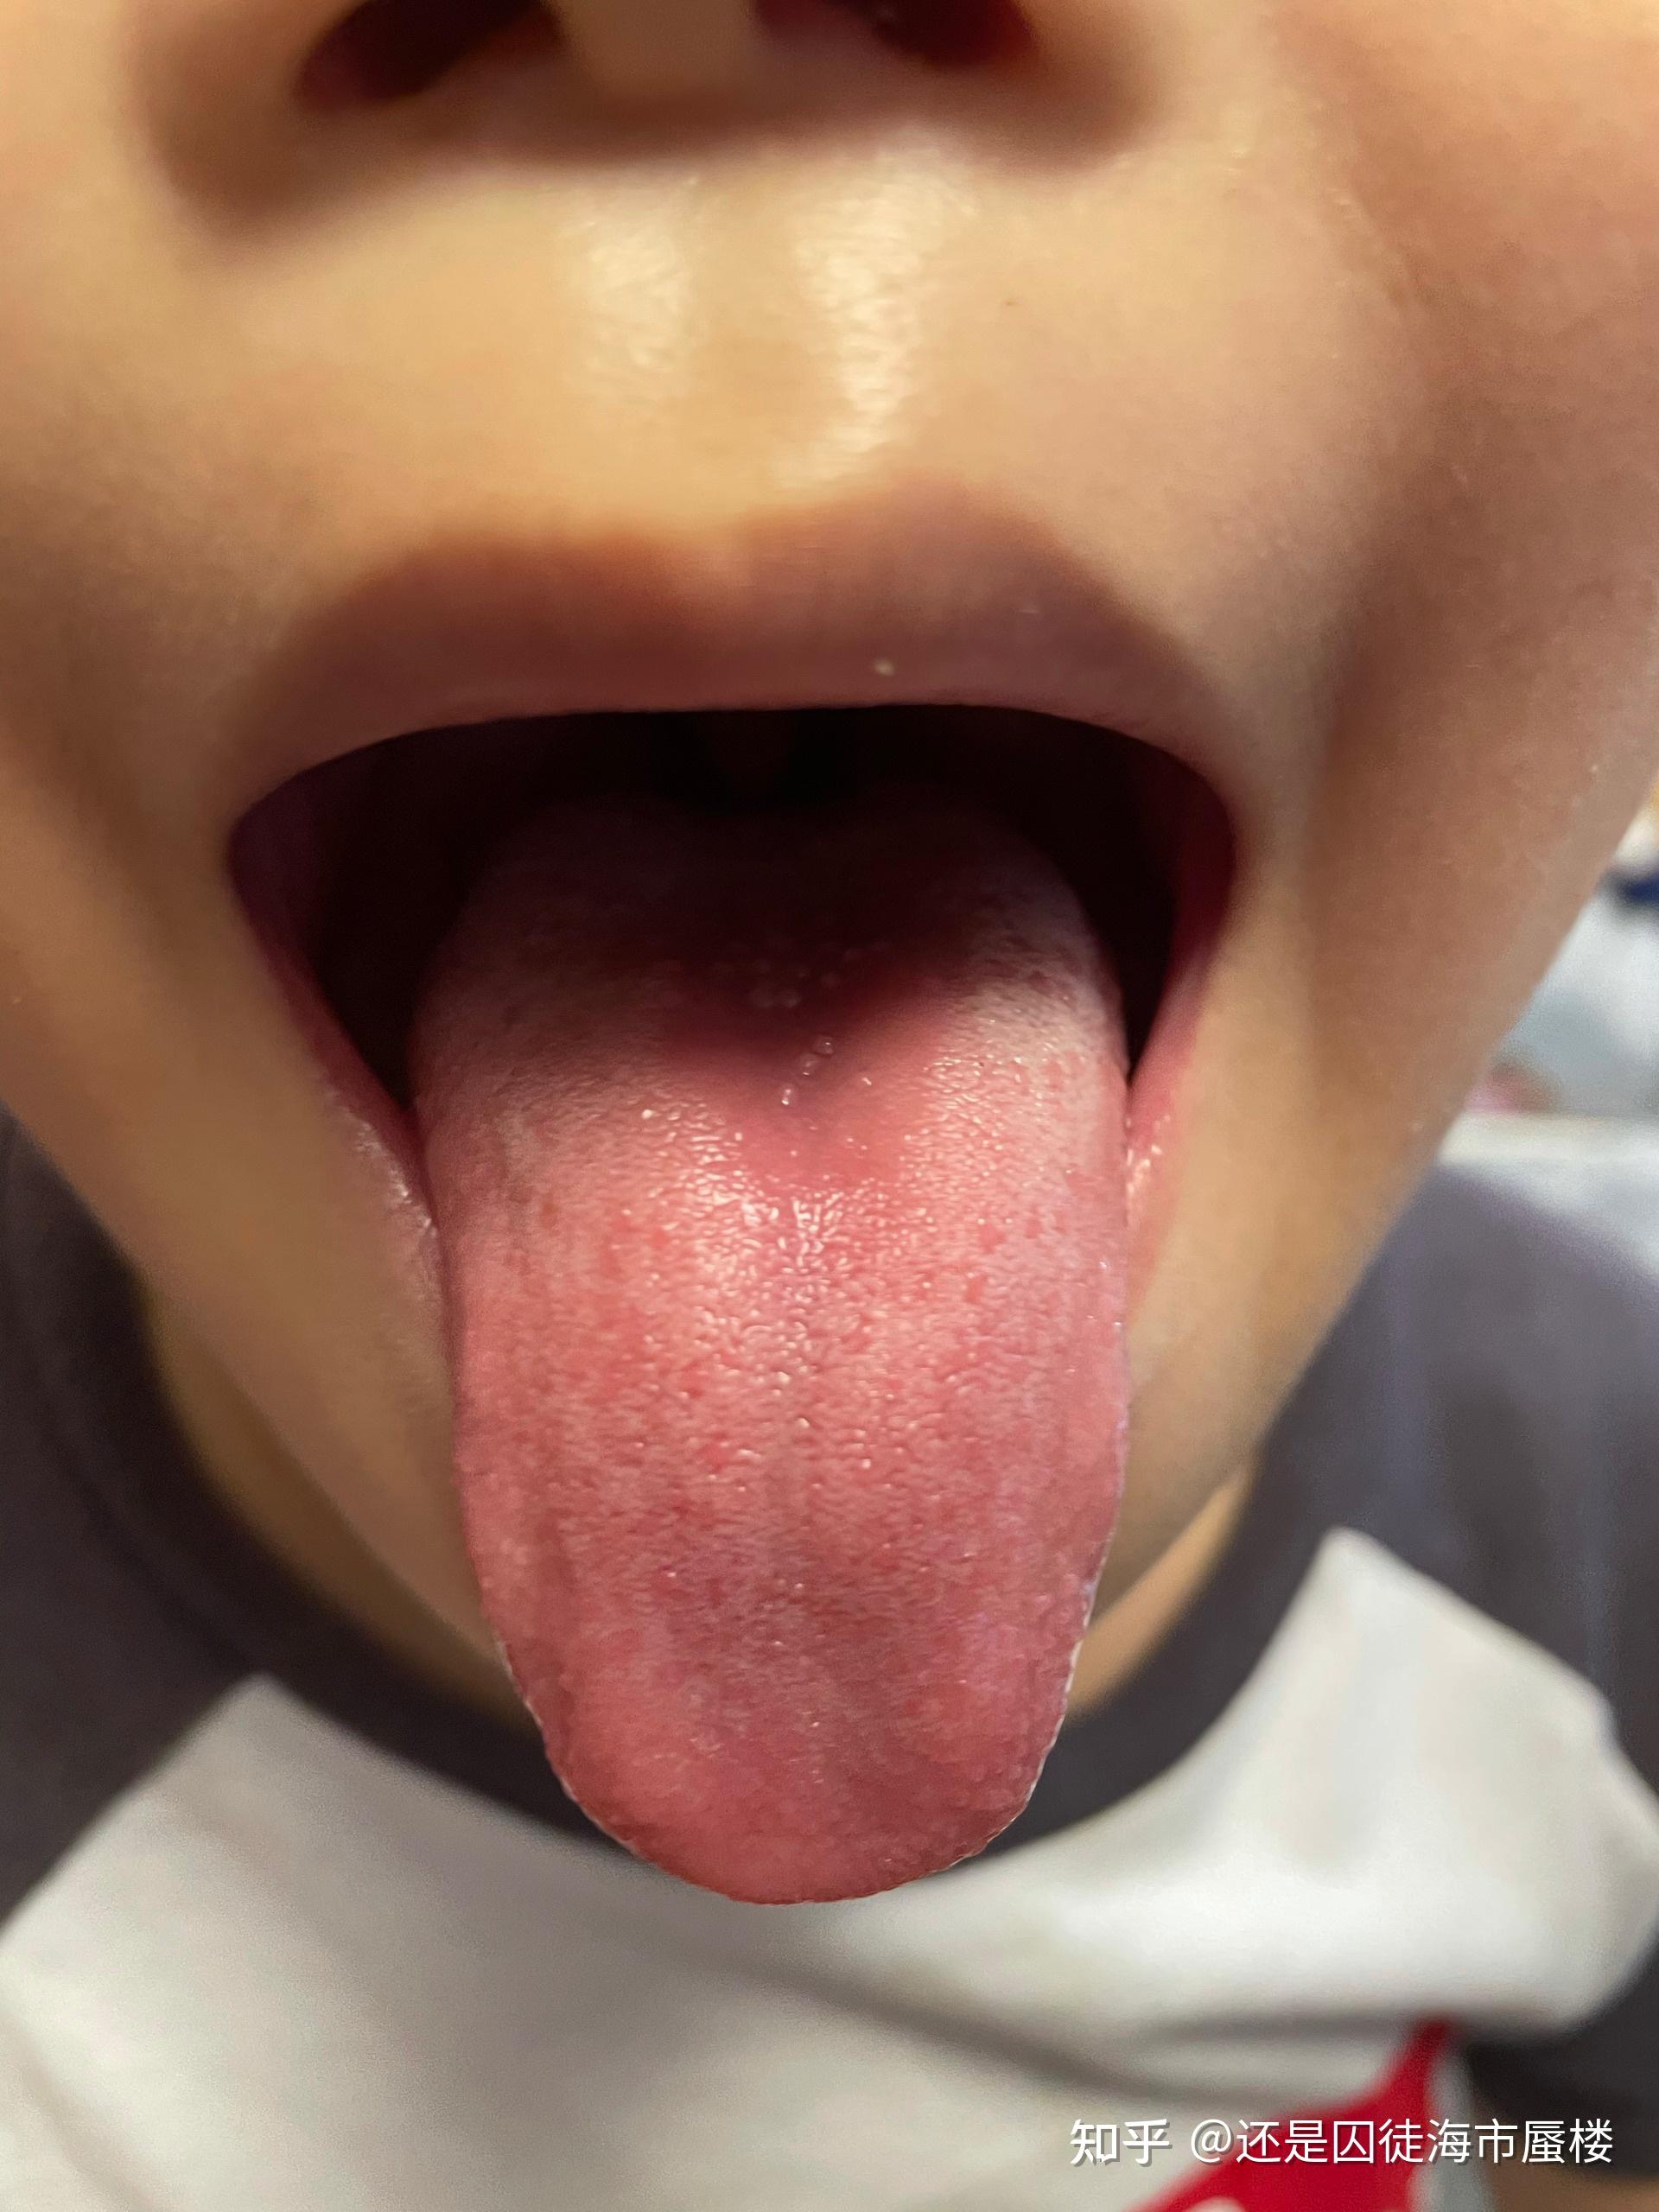 孩子舌头颗粒透明小泡图片